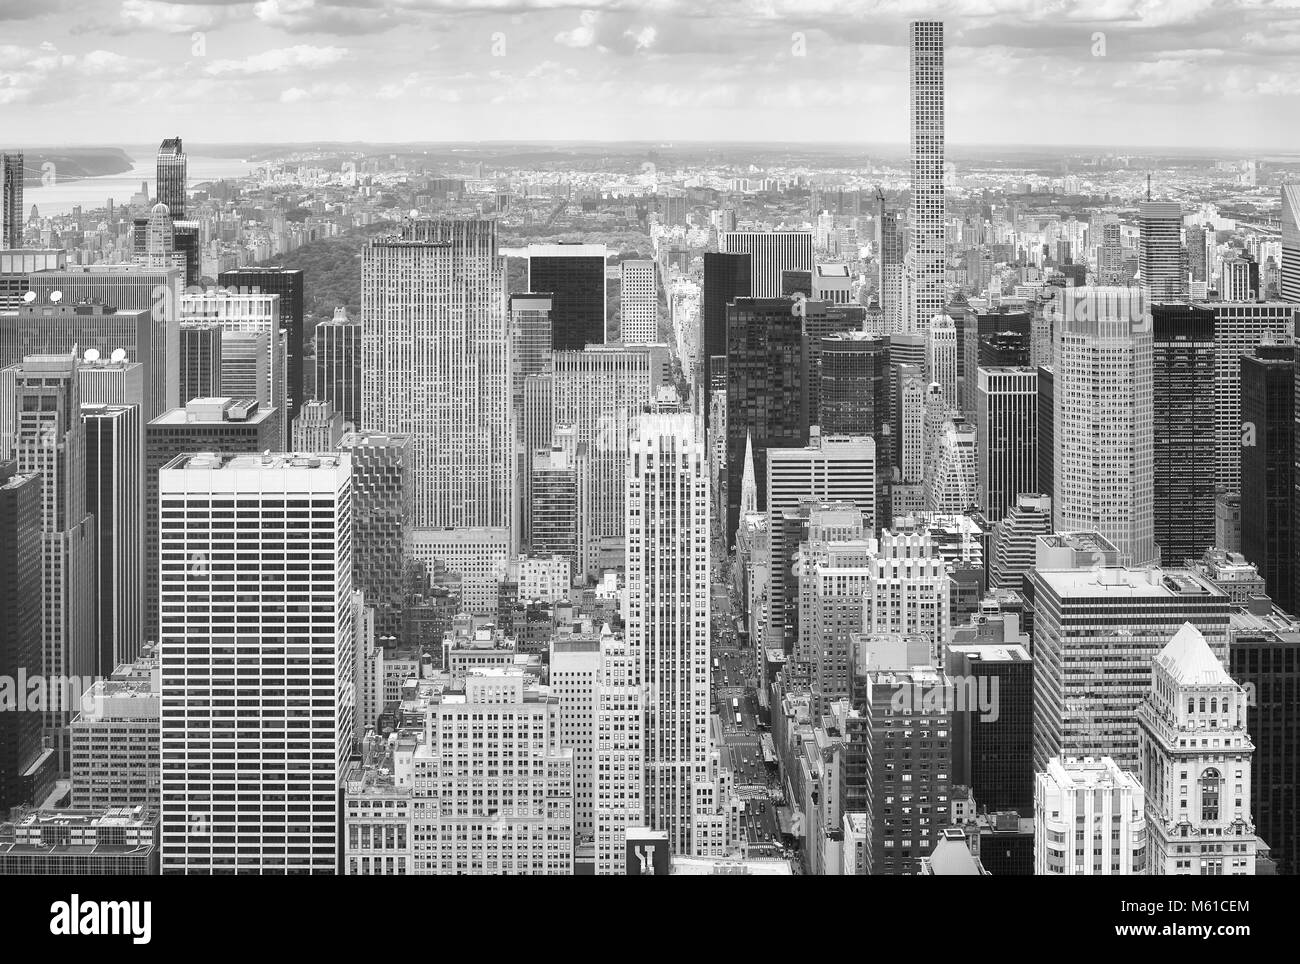 Immagine in bianco e nero dello skyline di New York City, Stati Uniti d'America. Foto Stock